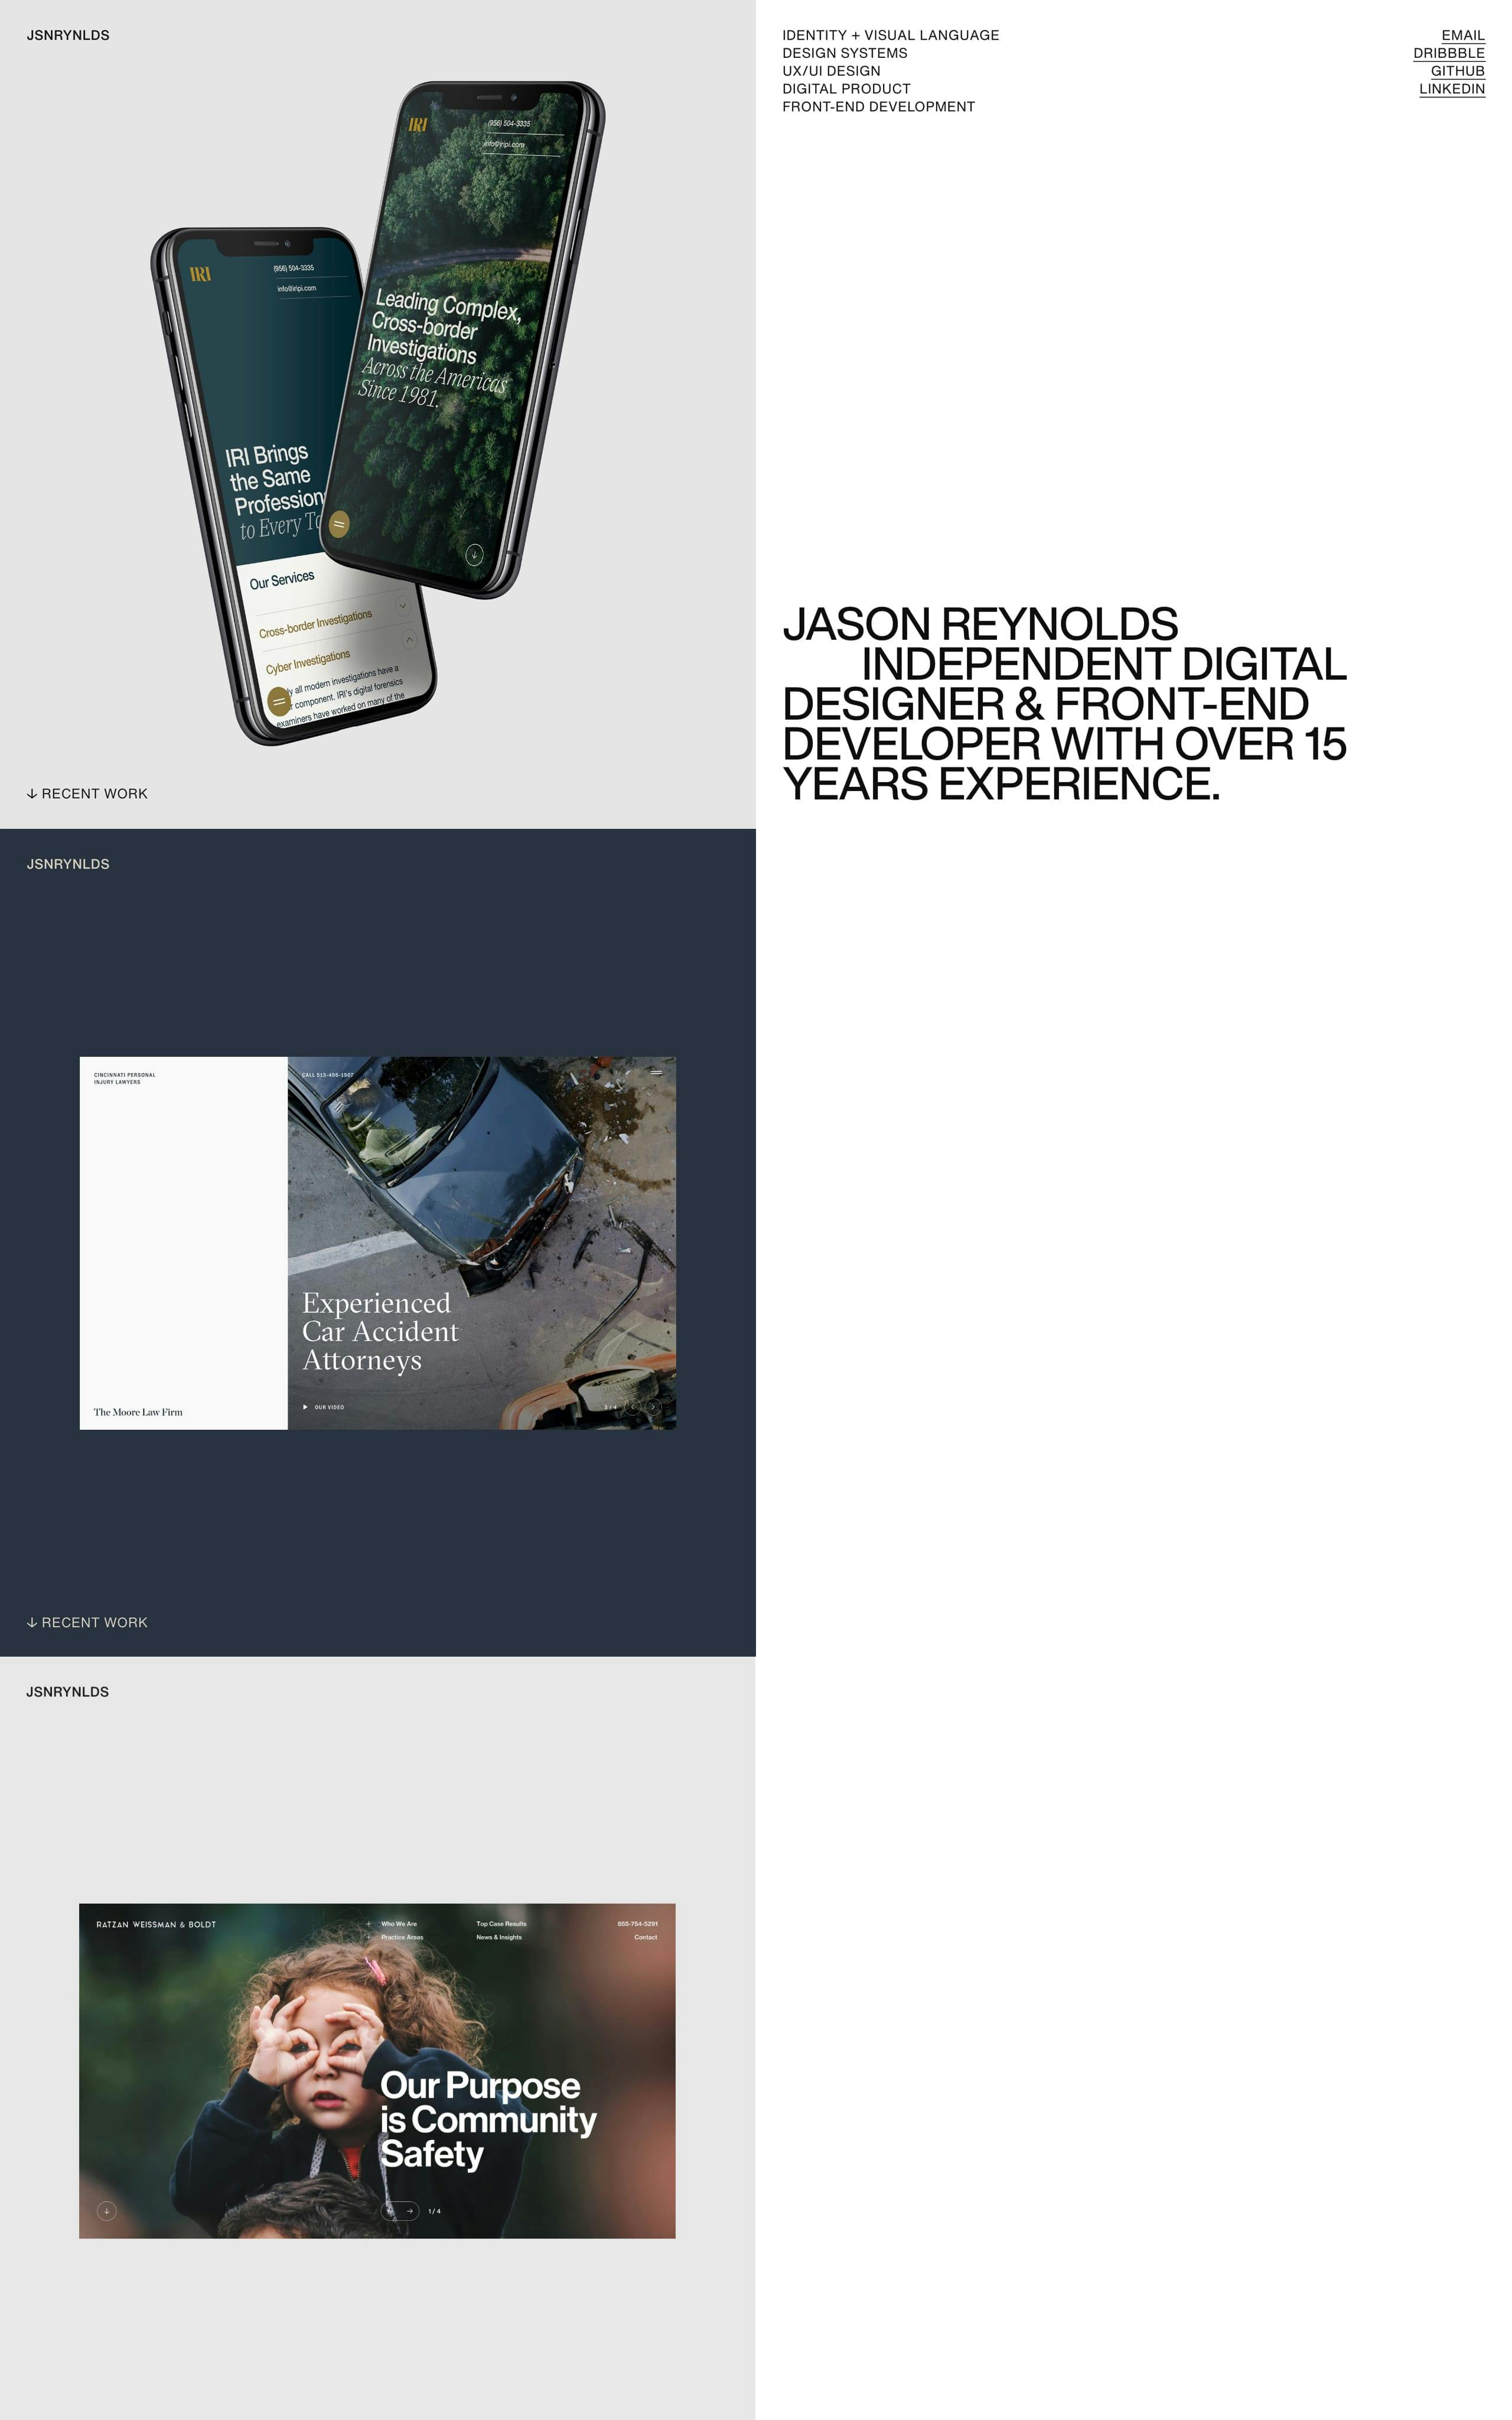 Jason Reynolds Website Screenshot